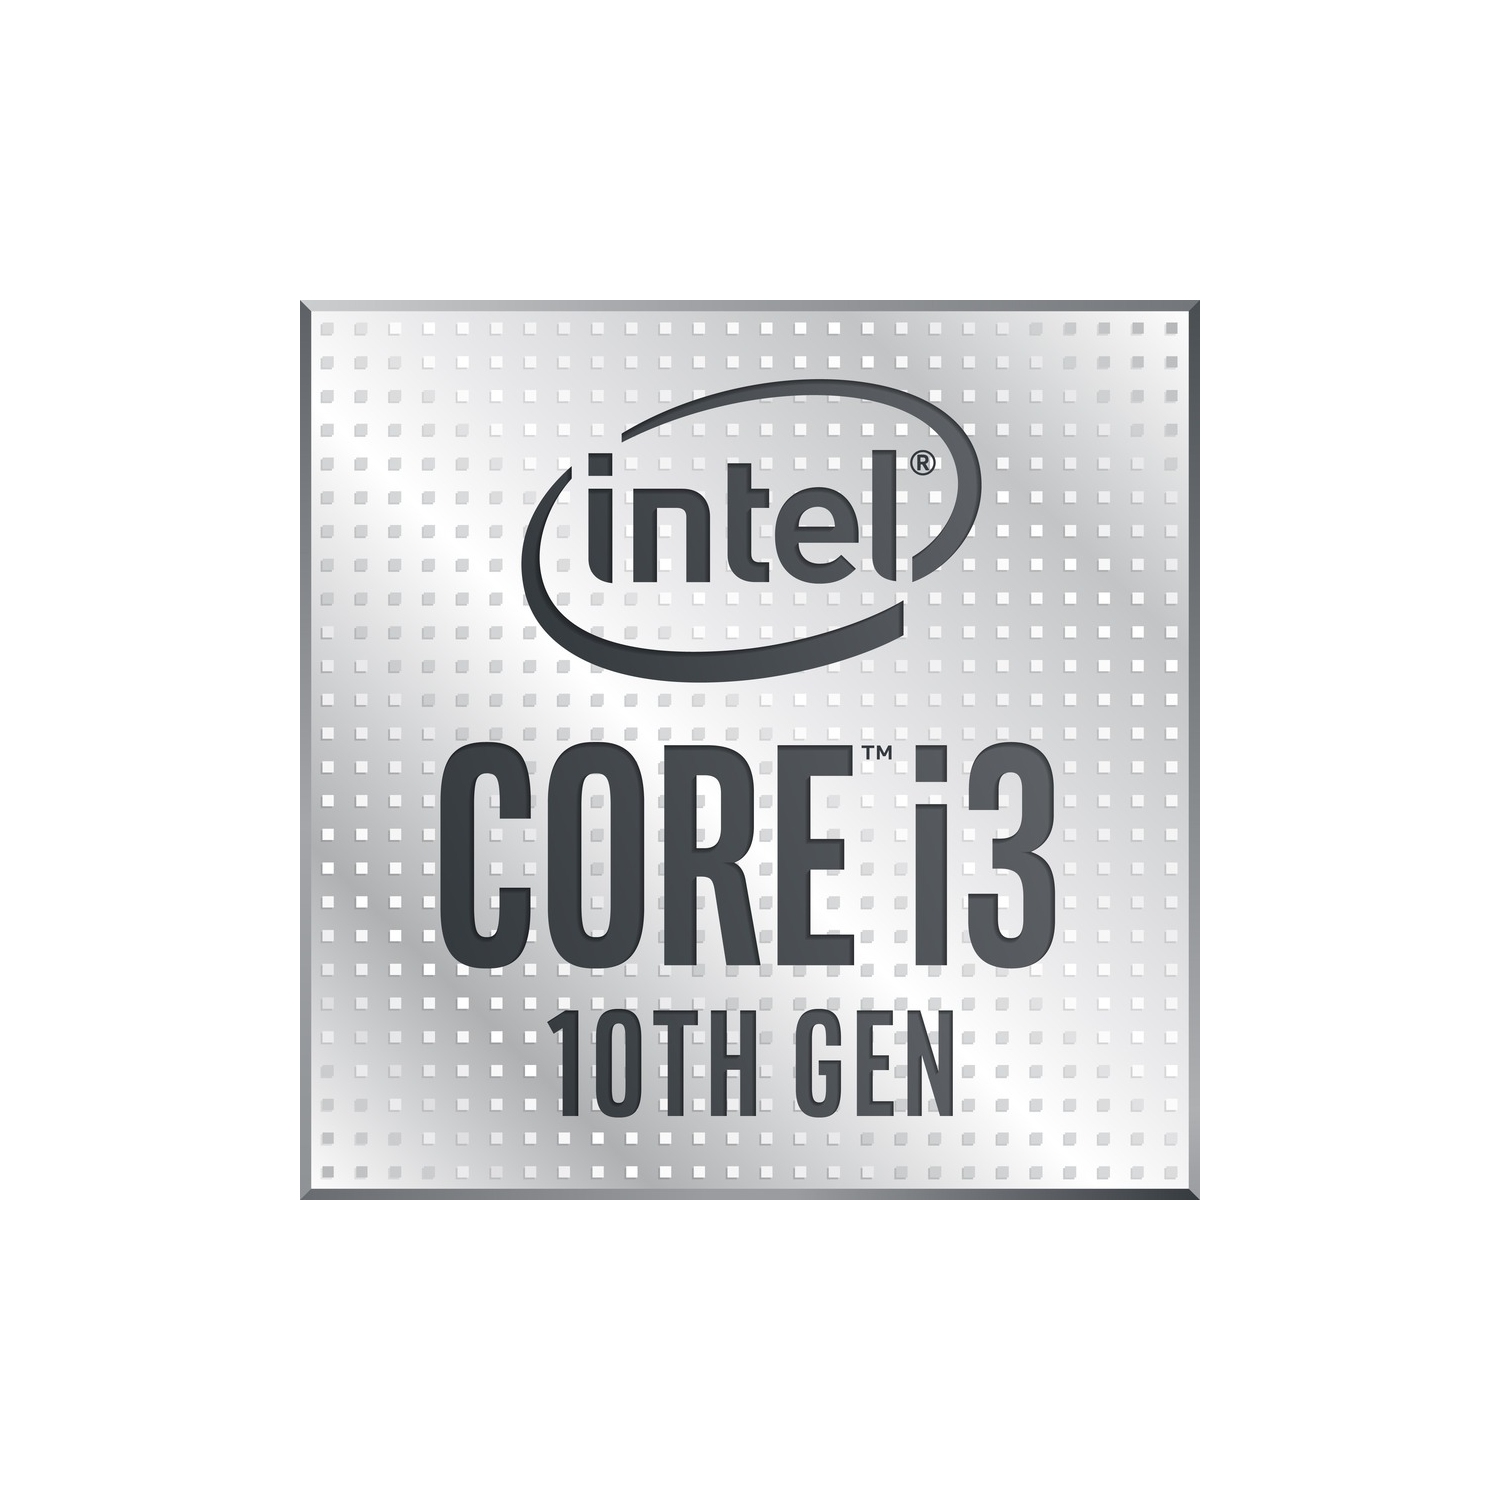 Intel Core i3 Quad-core i3-10100 3.60 GHz Desktop Processor BX8070110100